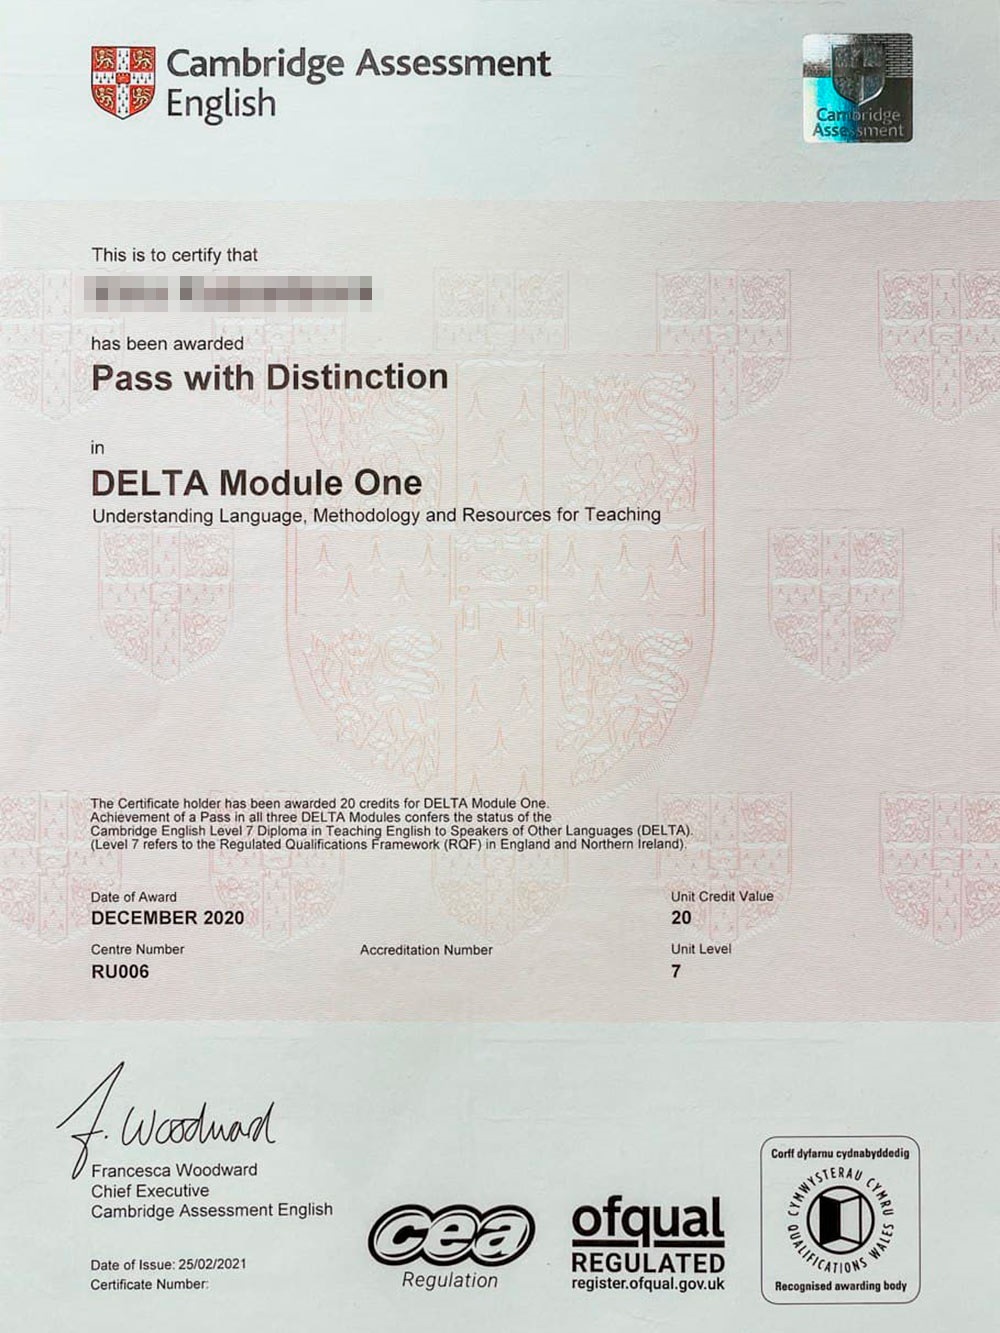 Сертификат Delta для английского языка: преподаватель понимает язык, освоил методологию, знает ресурсы для преподавания. Это первый модуль, есть еще два